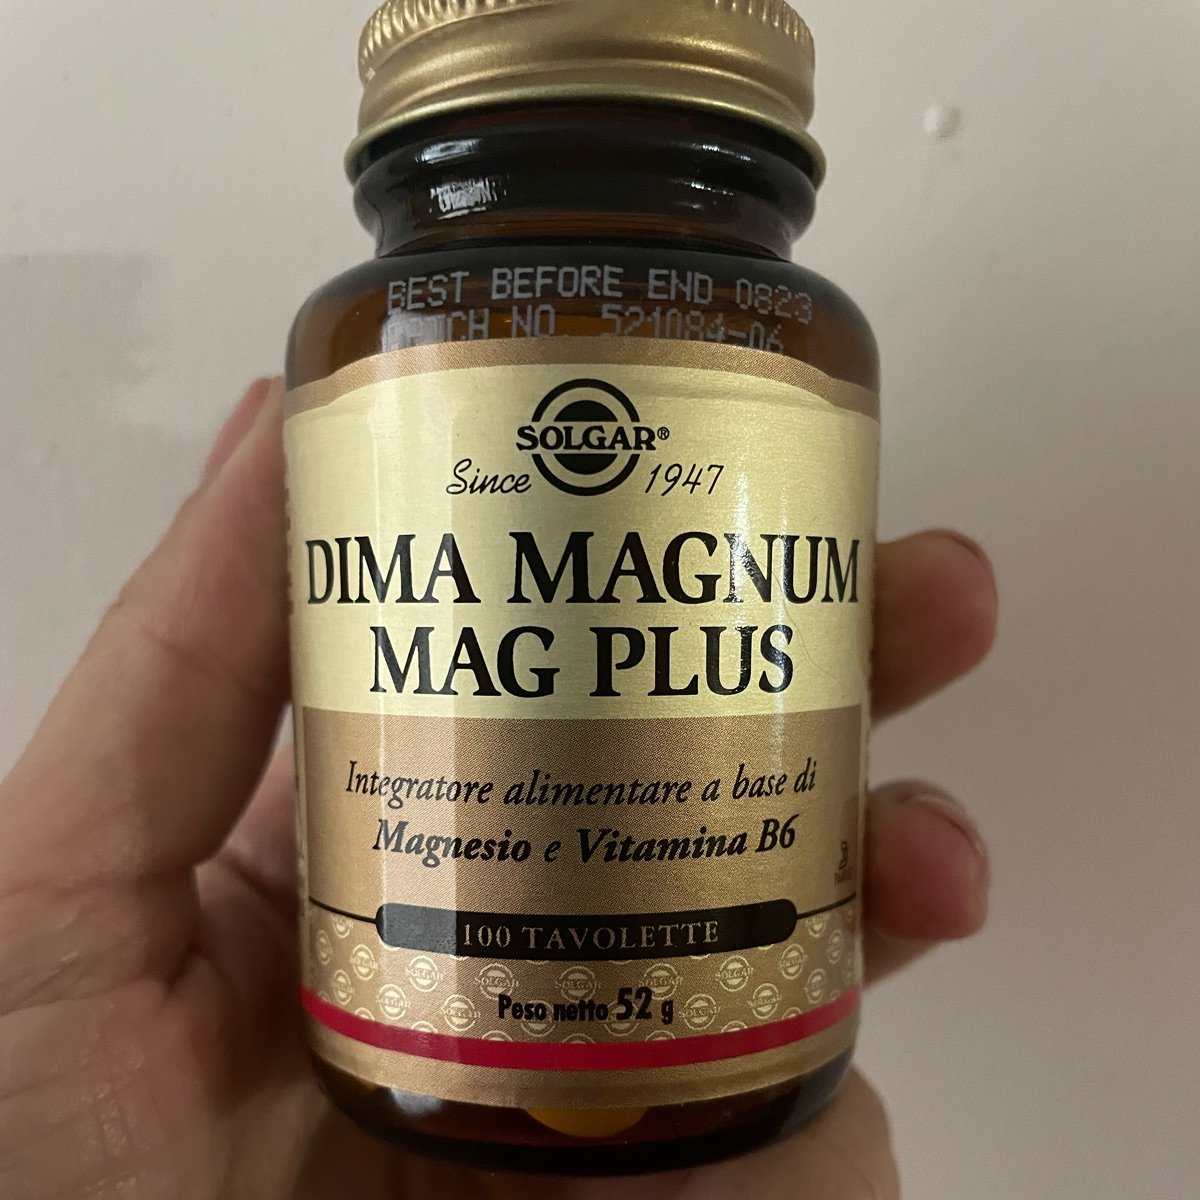 Solgar Dima Magnum Mag Plus Reviews | abillion